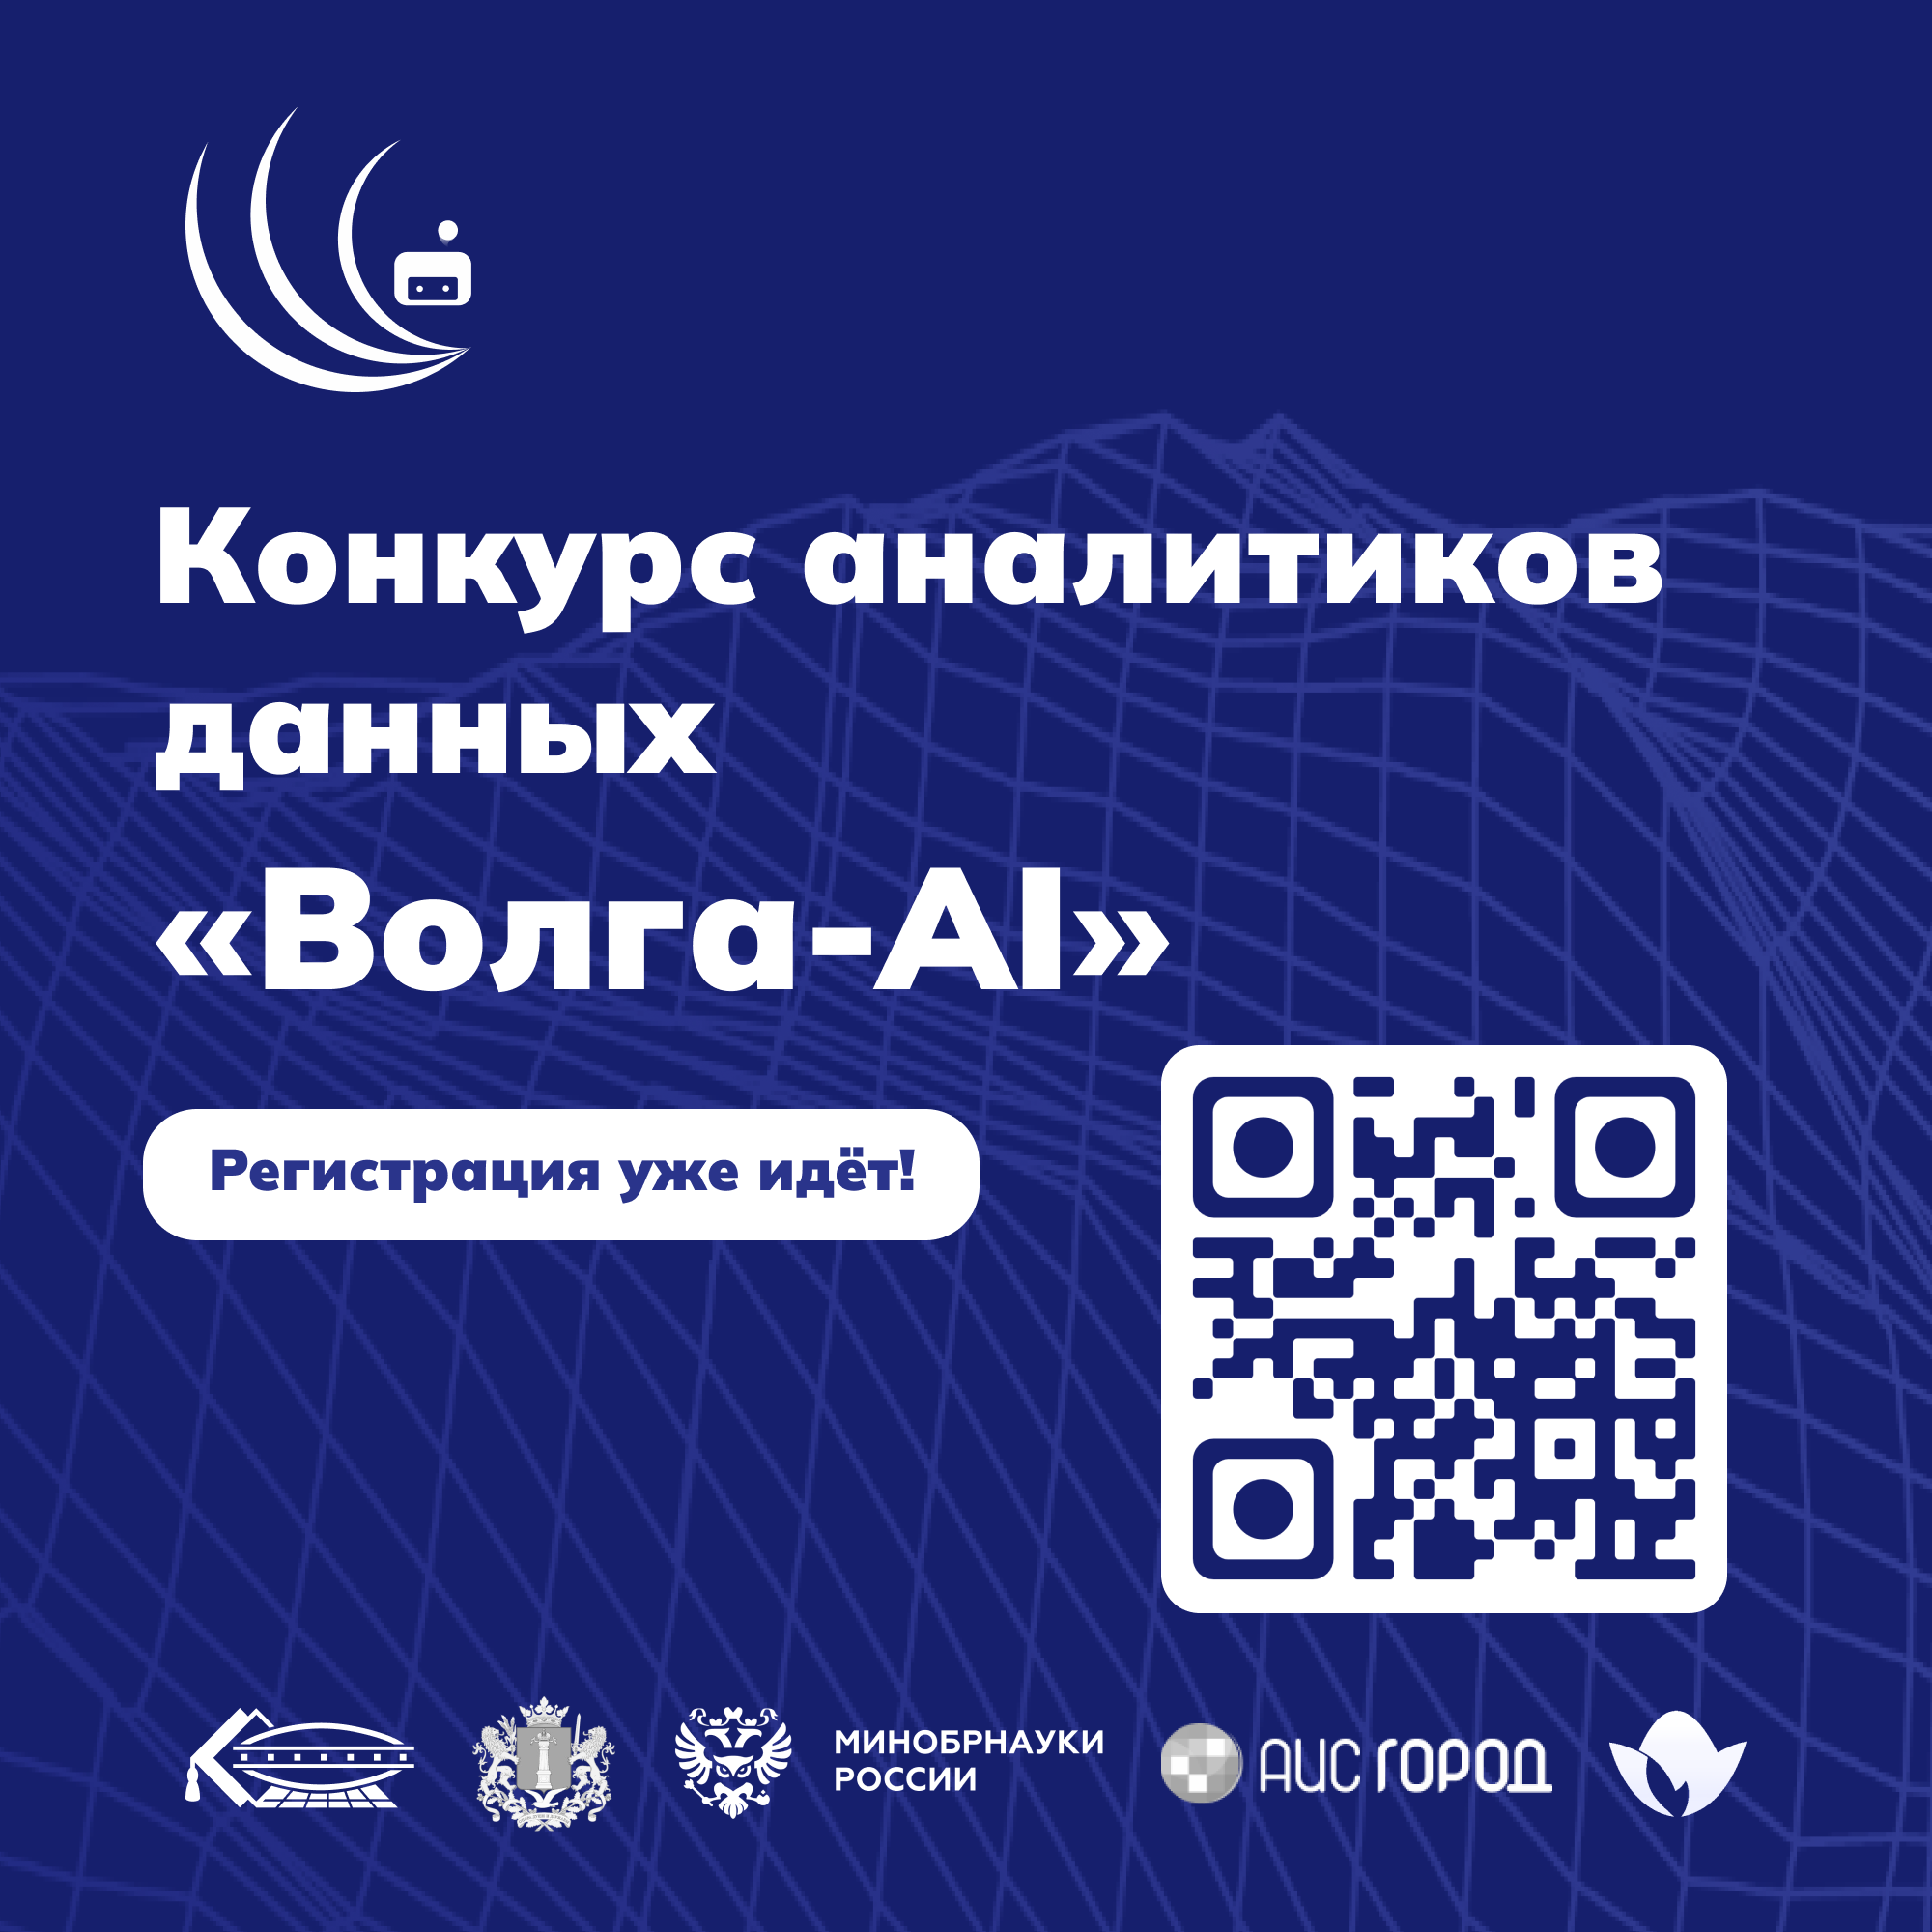 «Волга-AI»: получи бесплатное обучение в магистратуре